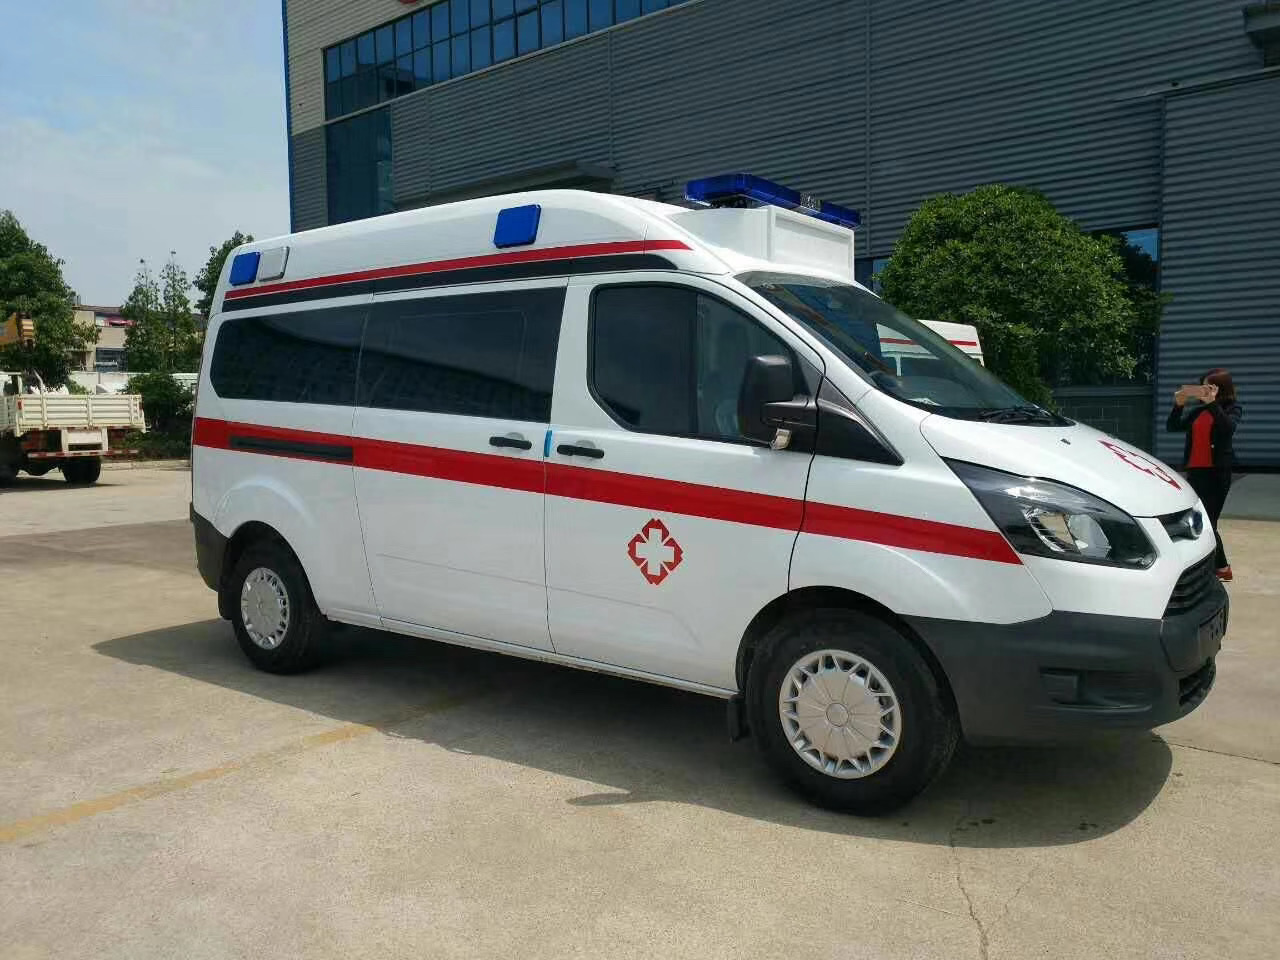 那坡县出院转院救护车